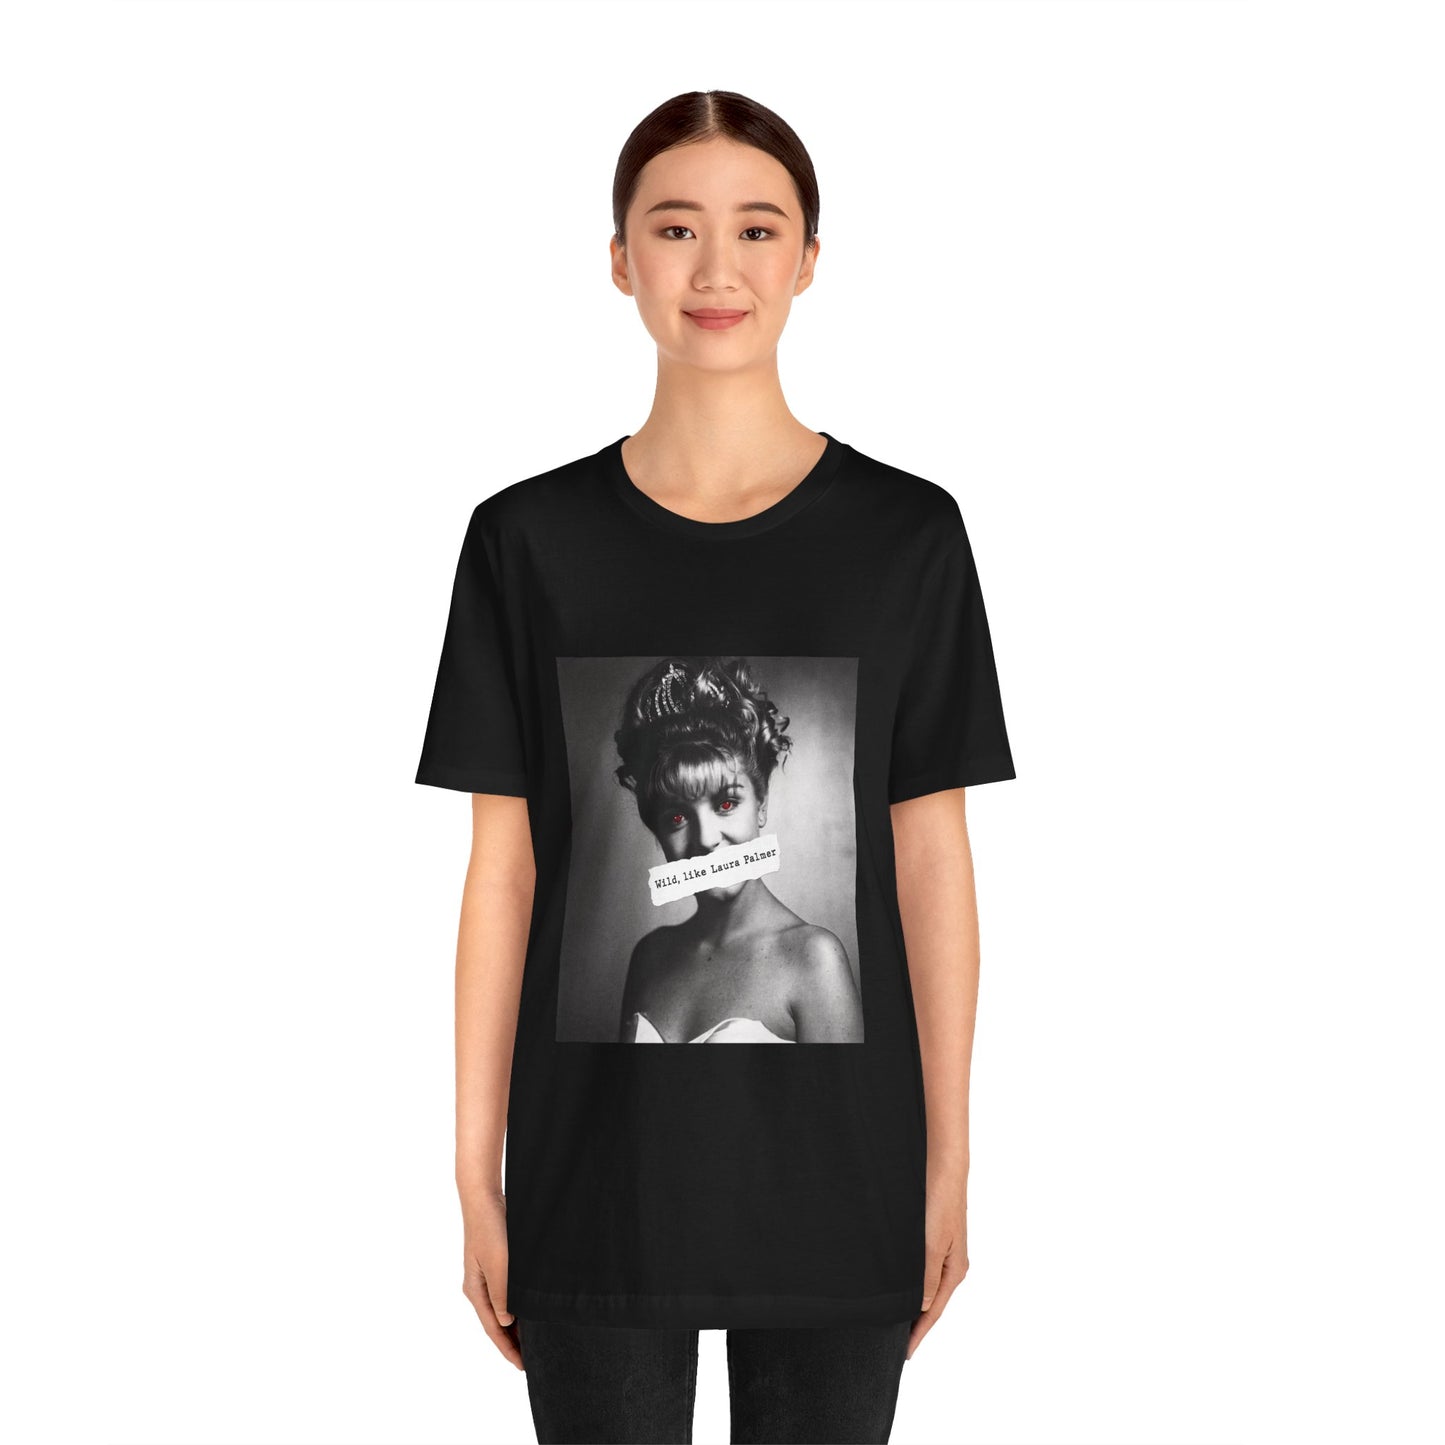 Horror Press Wild Like Laura Palmer T-Shirt - Laura Palmer - David Lynch Fan - Twin Peaks Fan Merch - Horror Movie Fan T-Shirt - Horror Press Merch - Gift for Horror Movie Fans - Scary Movie Lover Tshirt